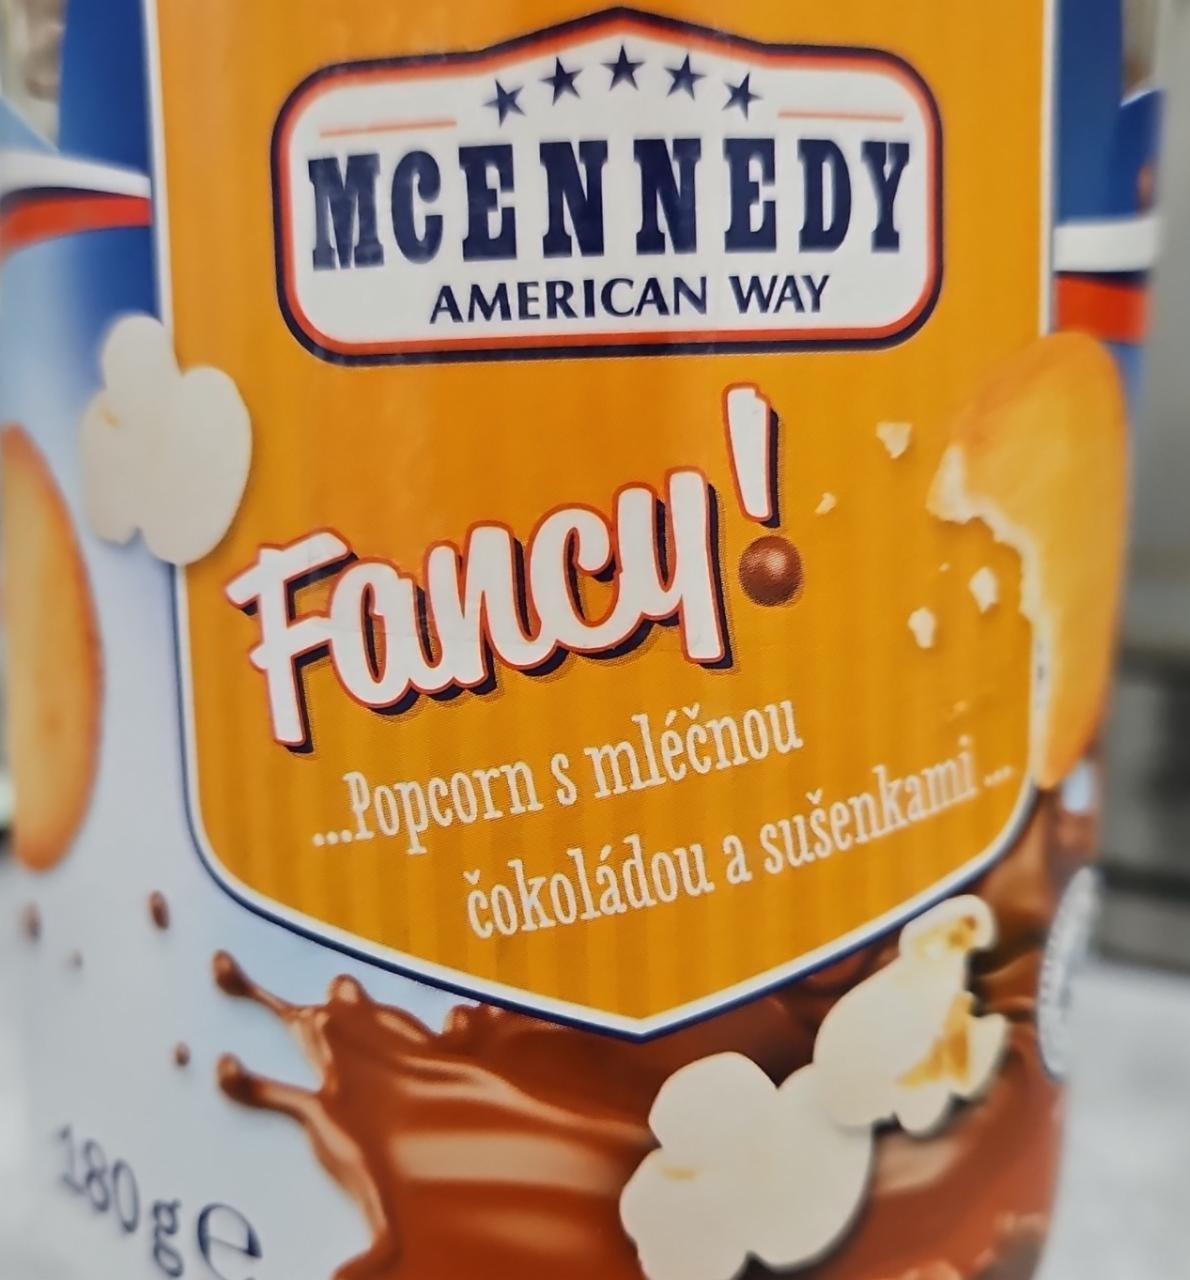 Fotografie - Fancy! Popcorn s mléčnou čokoládou a sušenkami McEnnedy American Way